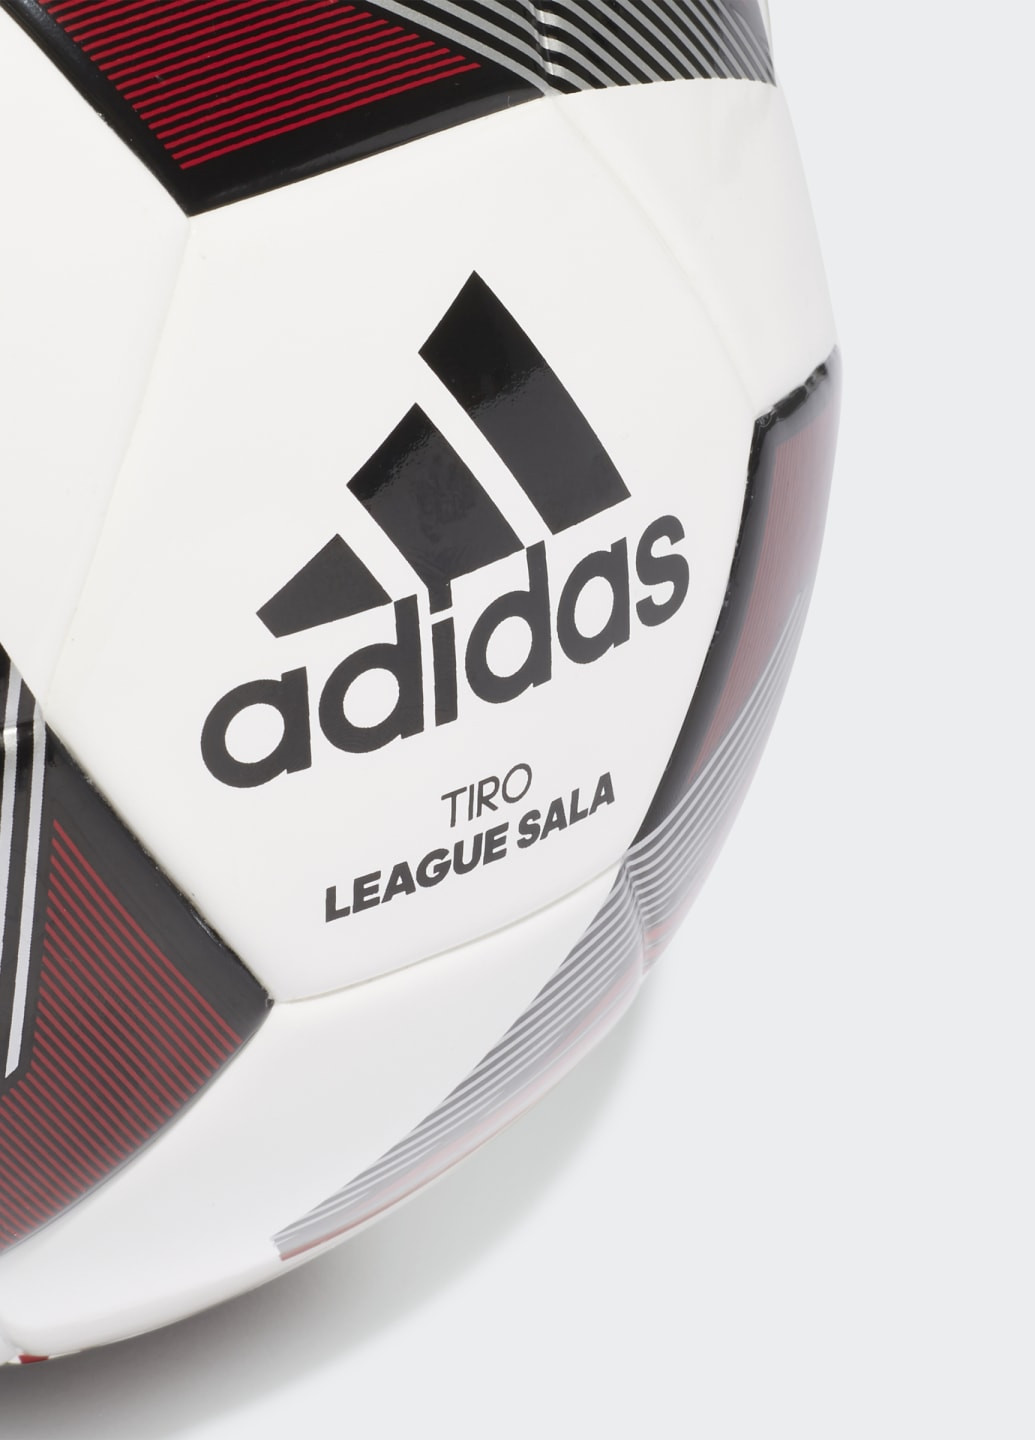 Футбольний м'яч Tiro League Sala adidas (252464506)